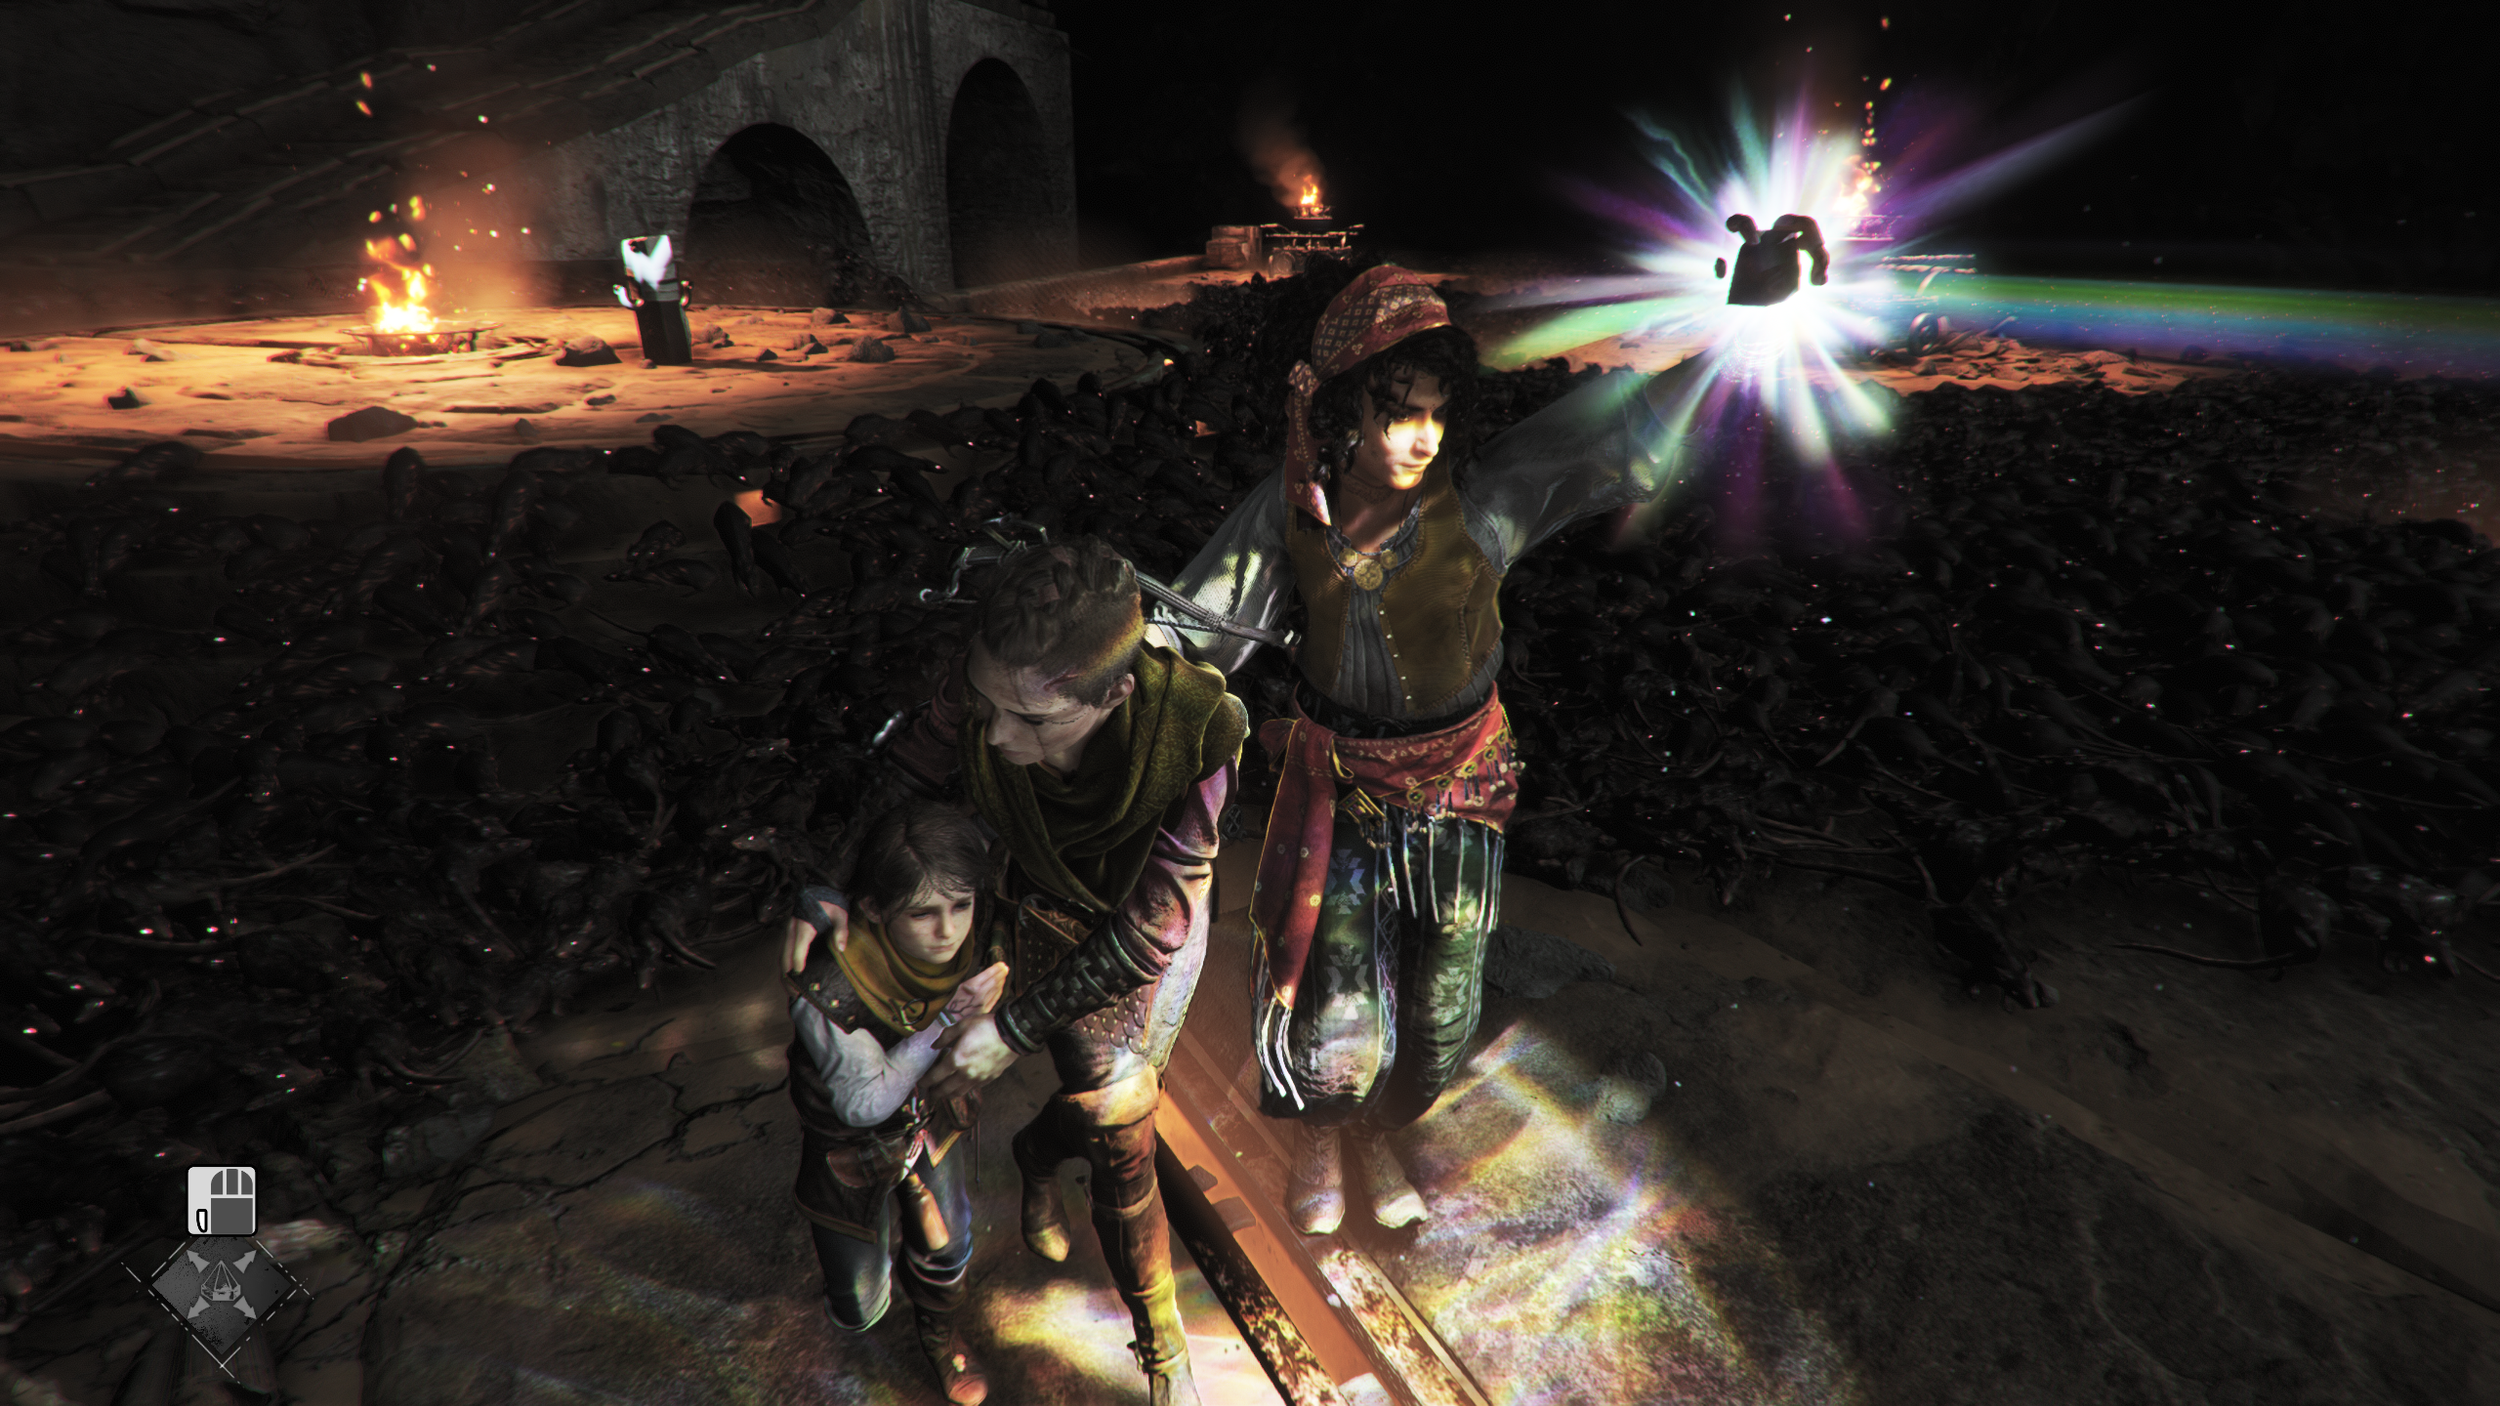 A Plague Tale: Requiem – Game Review